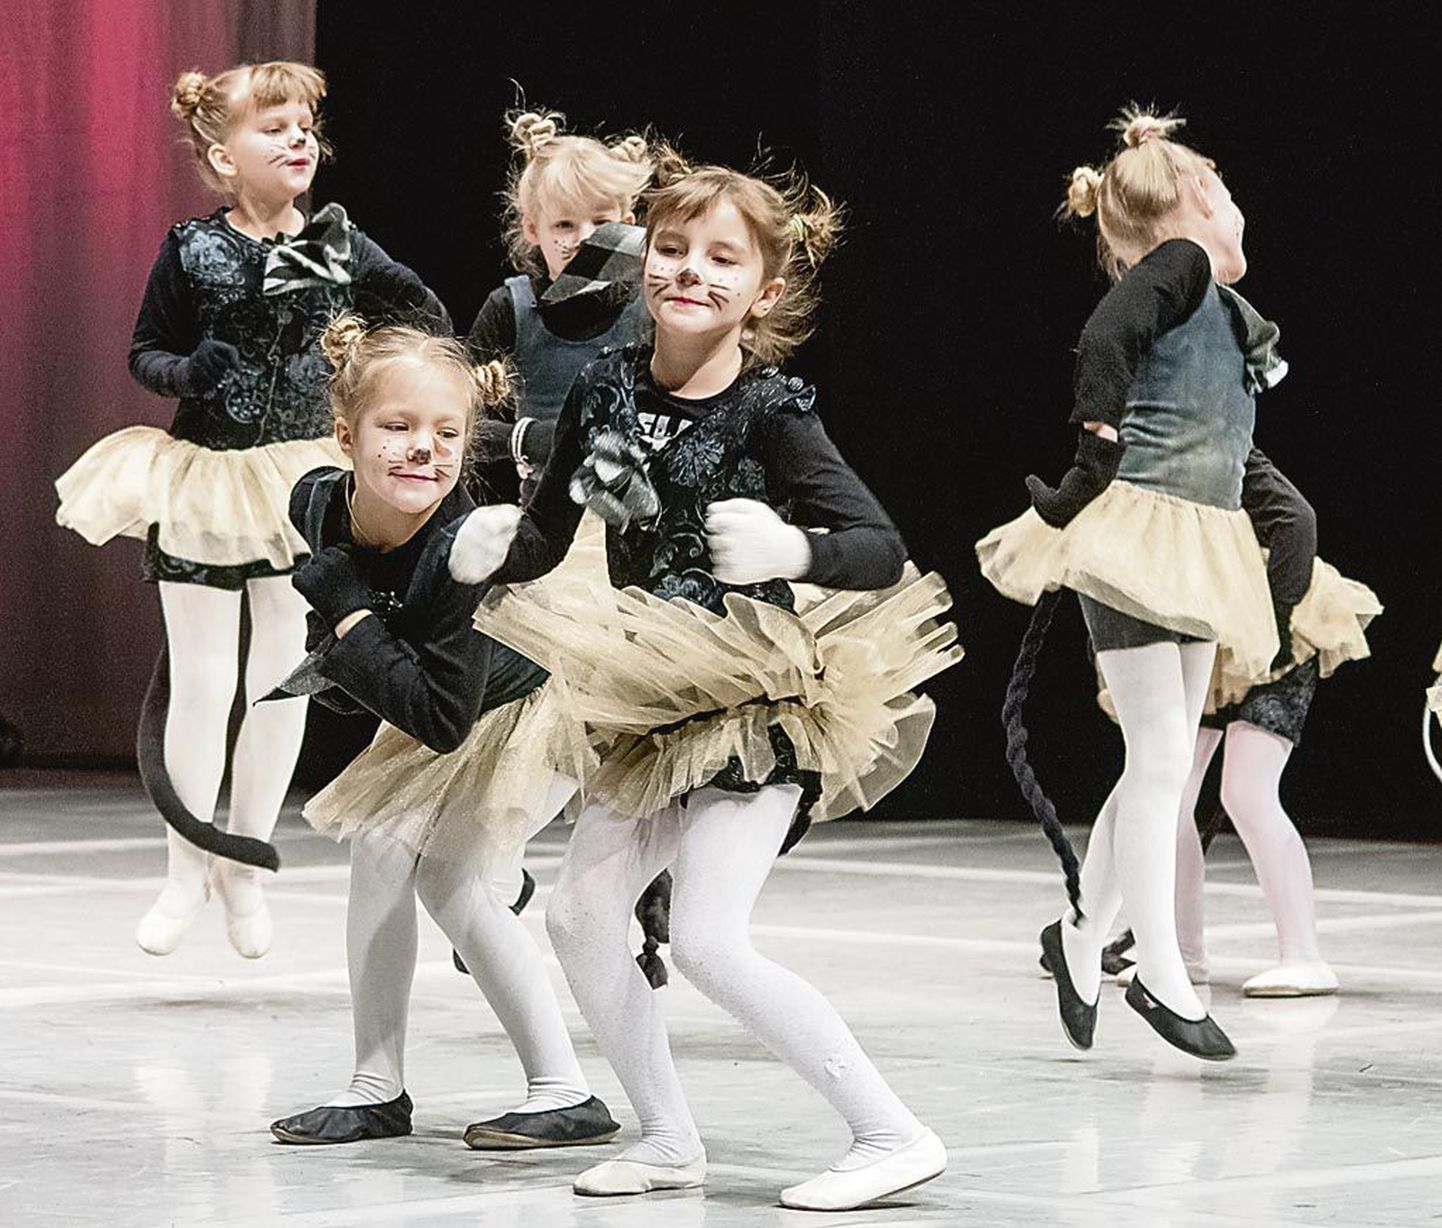 Eelmisel aastal Koolitantsu festivali ei toimunud, kuid tänavu leiab Eesti suurim tantsuüritus taas aset. Pärnus võtavad sellest teiste seas osa ka Laine Mägi tantsukooli kasvandikud. Pildil selle tantsukooli üks paljudest tunamullustest numbritest.